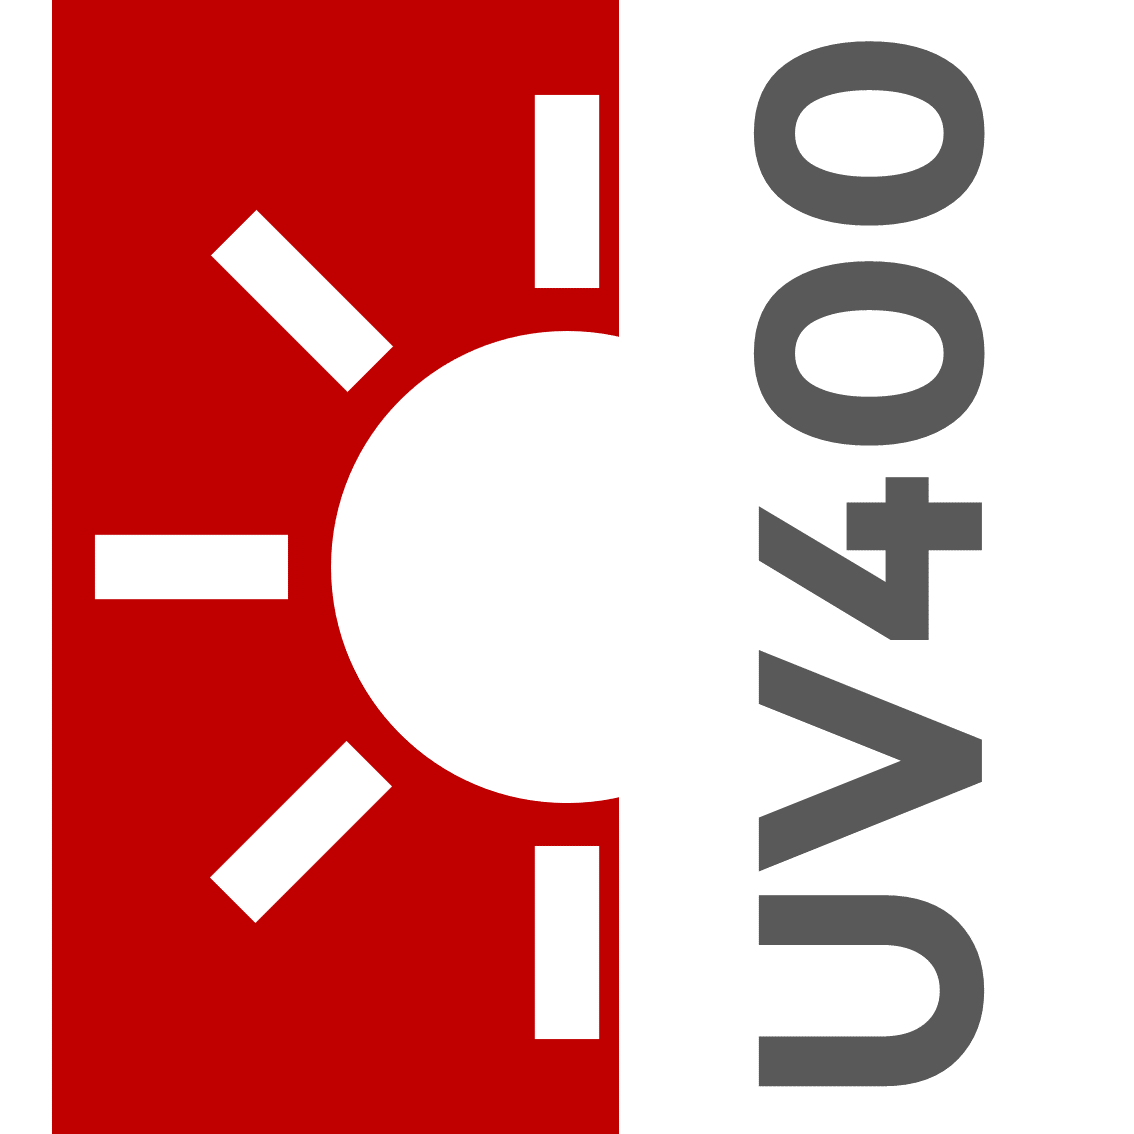 UV400